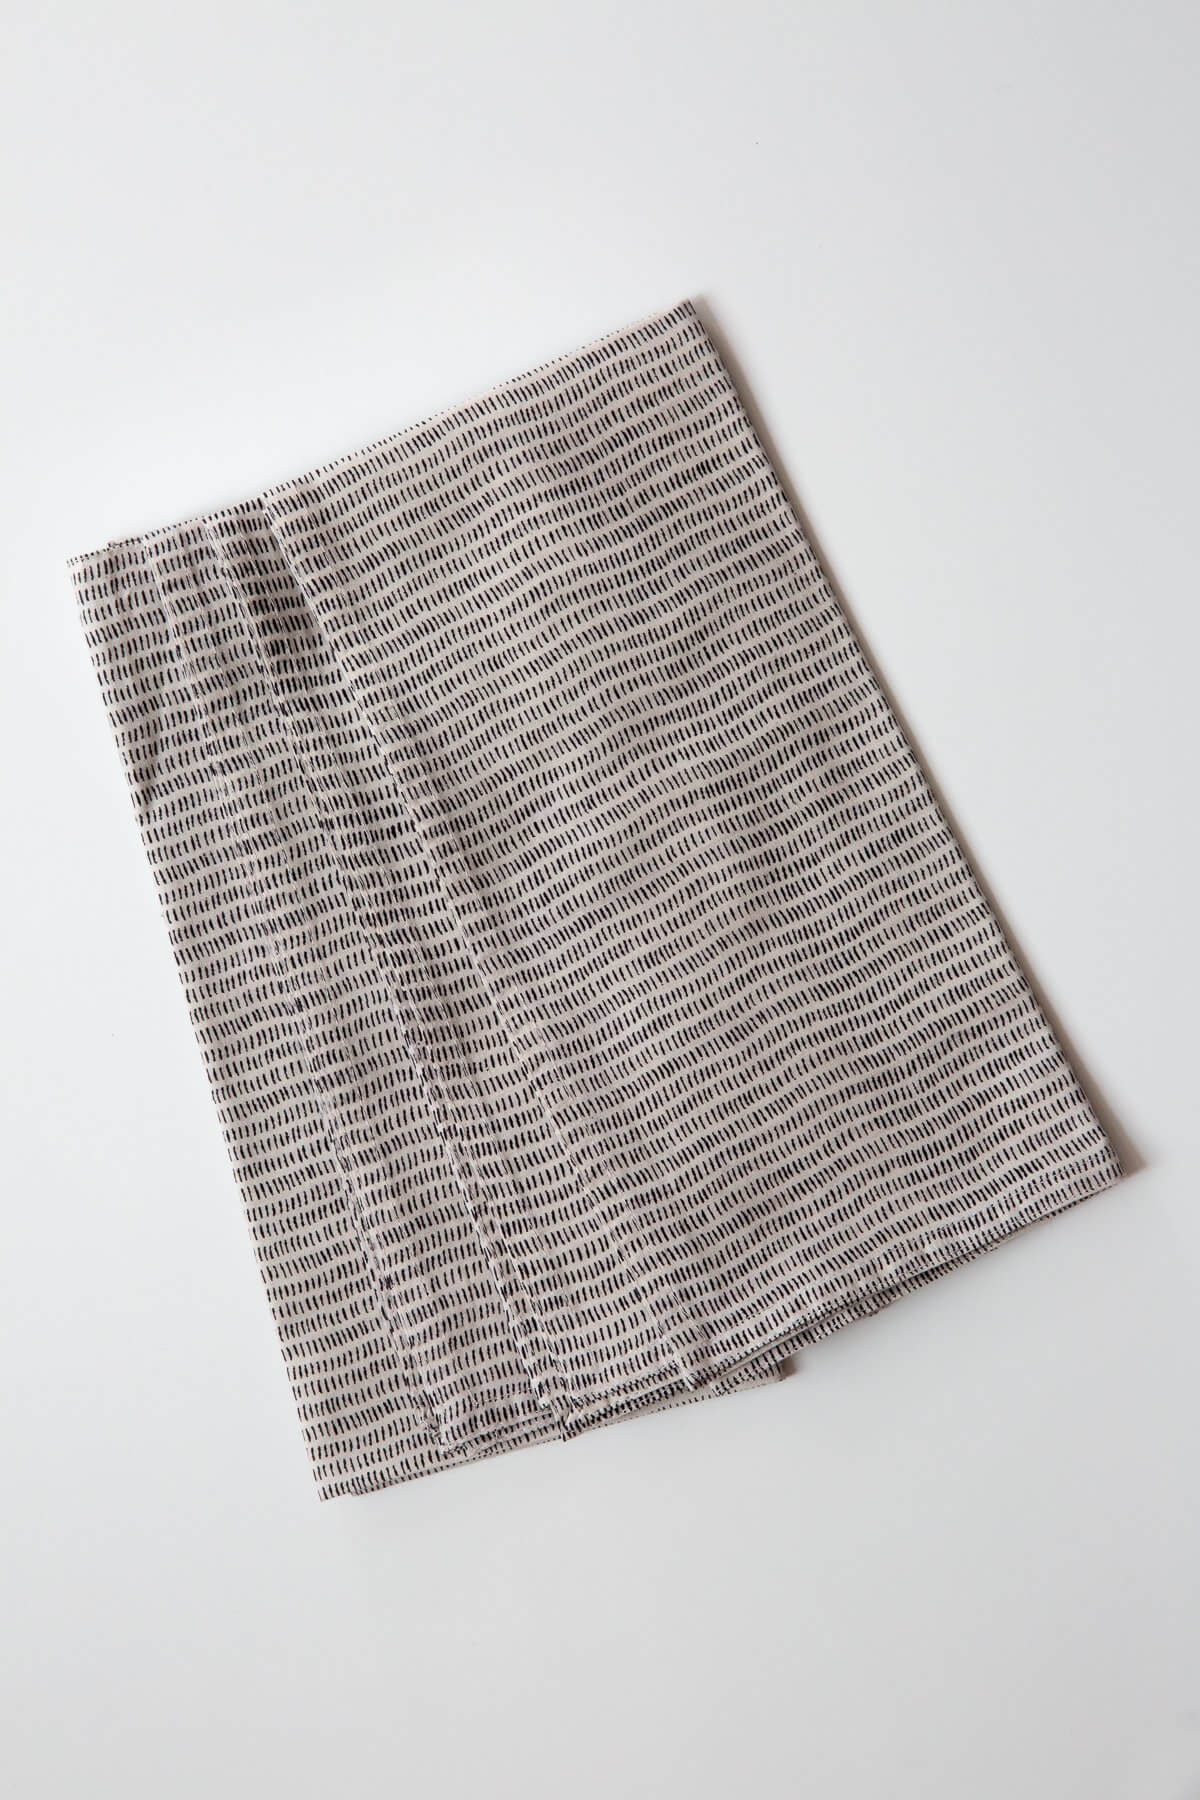 Gray Market Alice Stripes Black Napkin Set